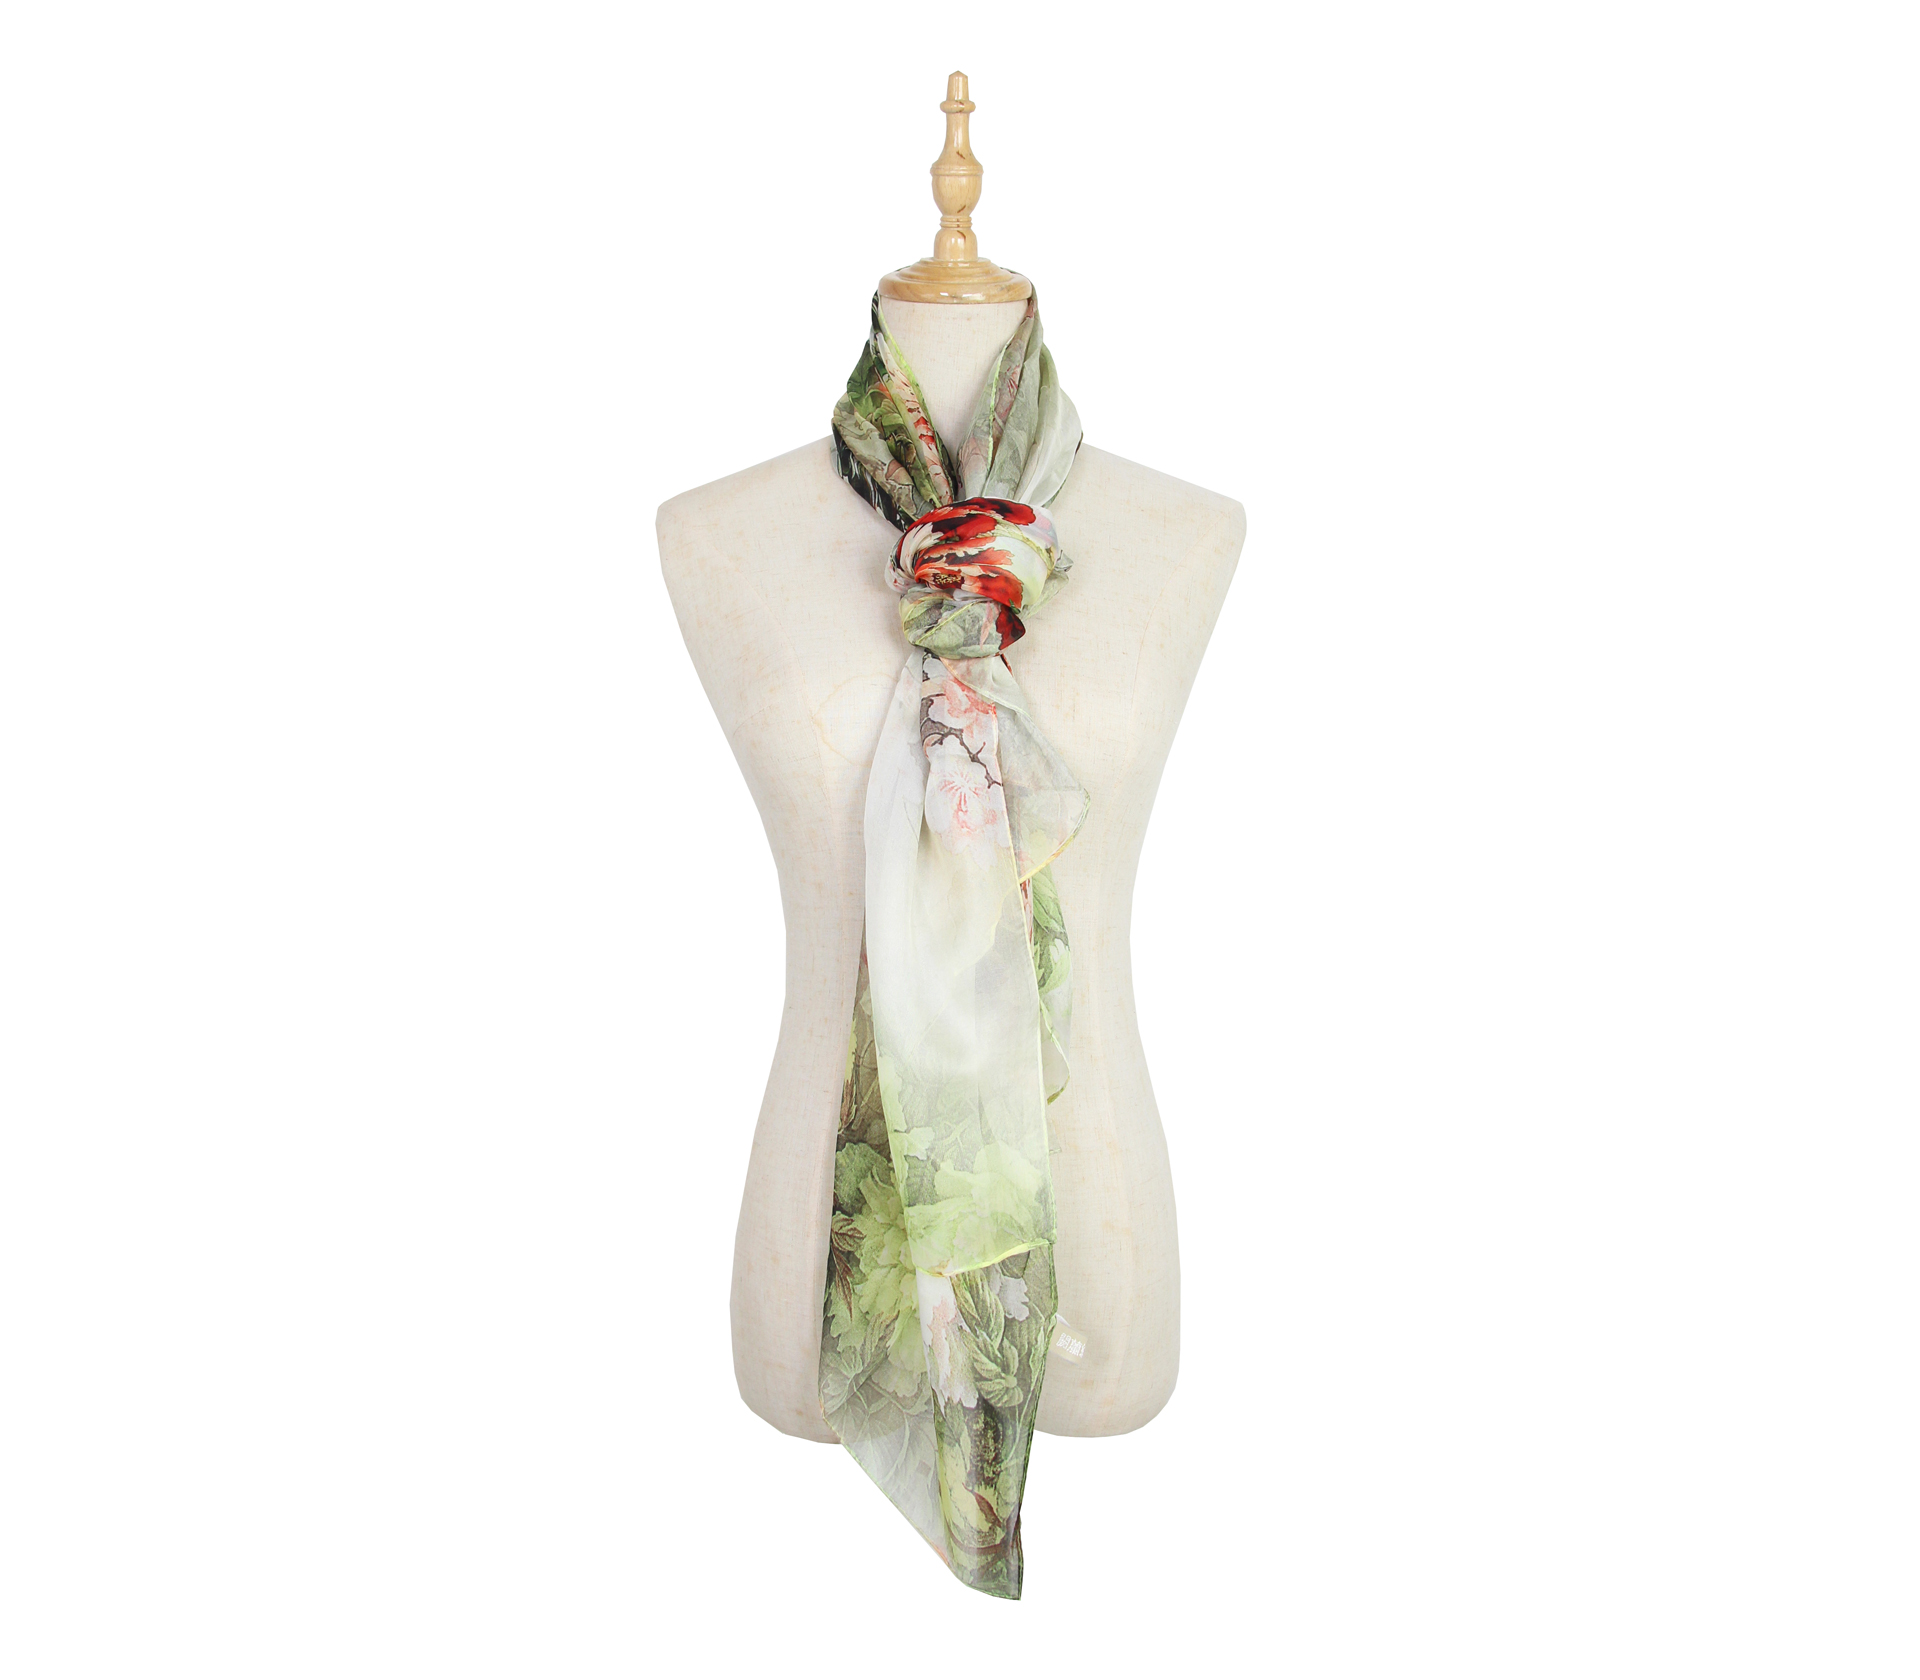 闕蘭絹印花花朵蠶絲絲巾(175*65)- 綠色 - 1005